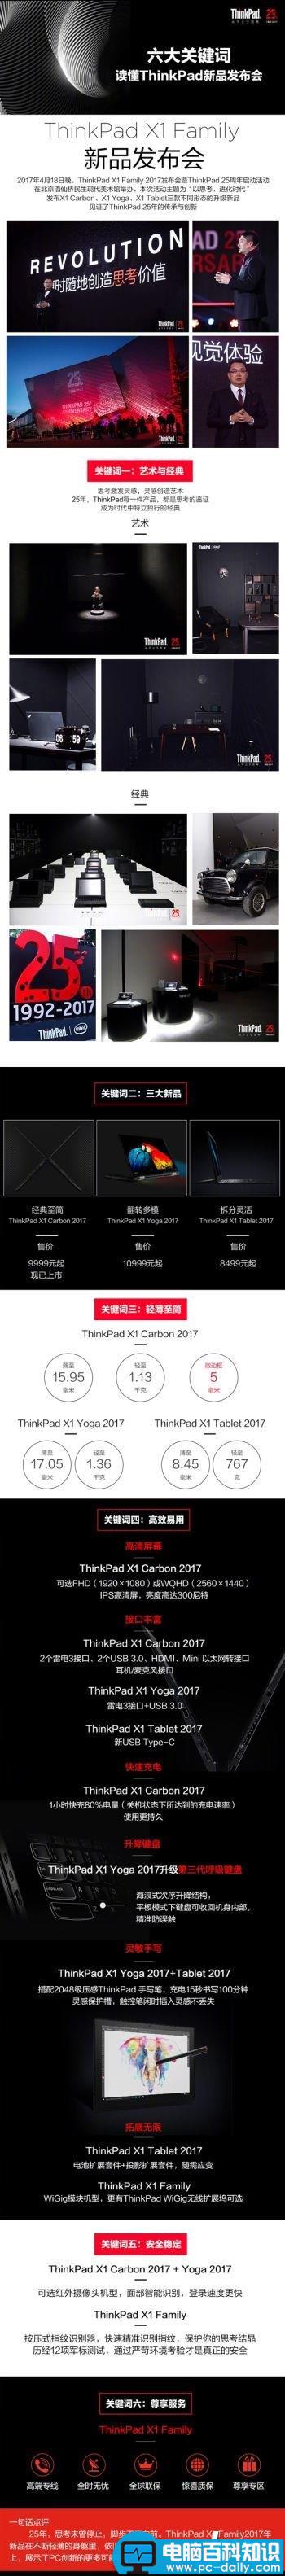 联想,ThinkPad,X1,Carbon2017,x1yoga2017,x1Tablet